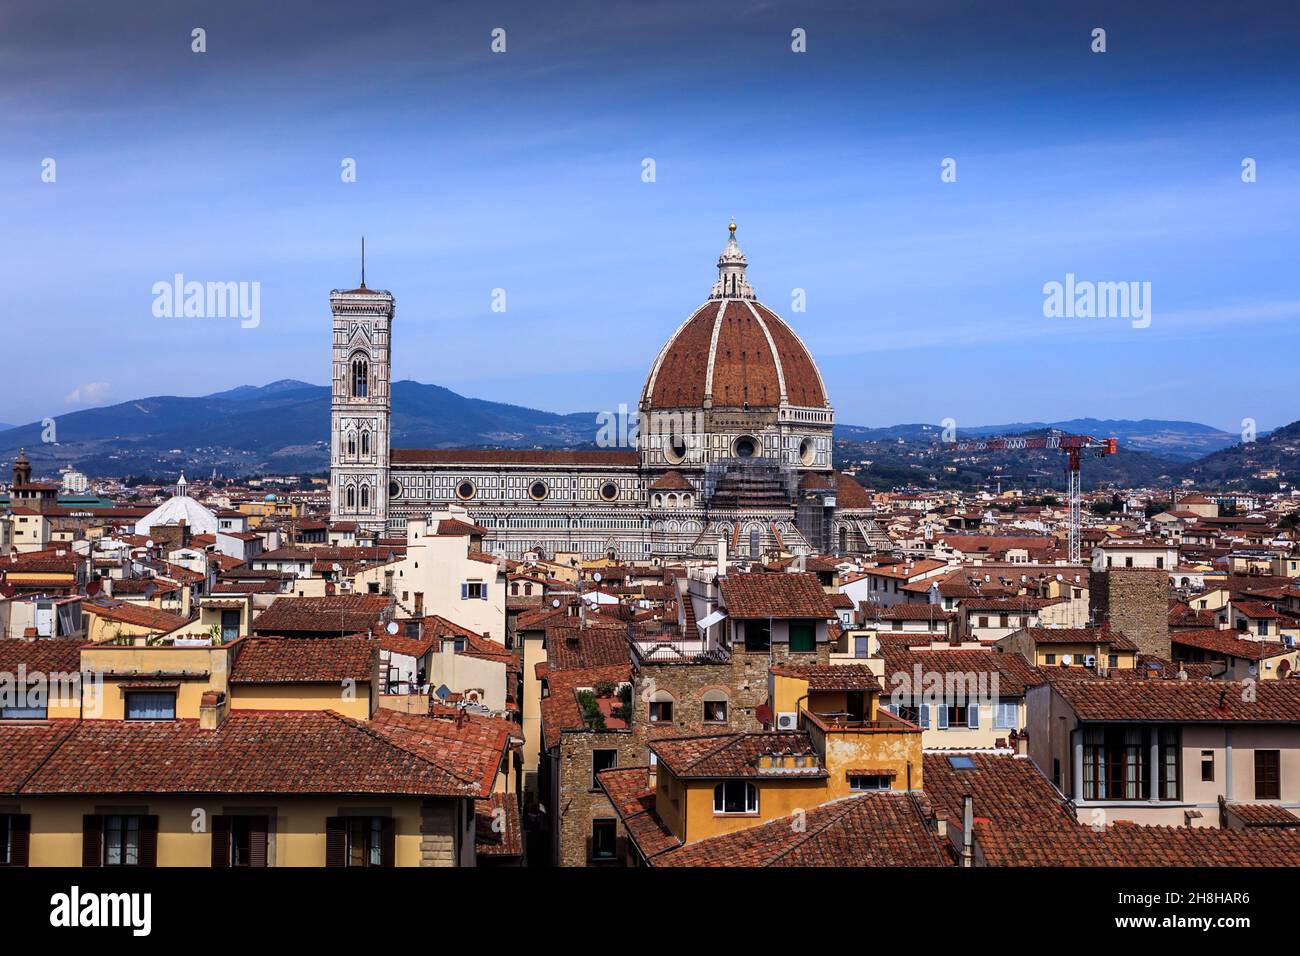 La catedral del Duomo, Santa Maria del Fiore y el Campanile en Florencia. Italia. La cúpula fue un gran logro de Brunelleschi en ese momento. Foto de stock